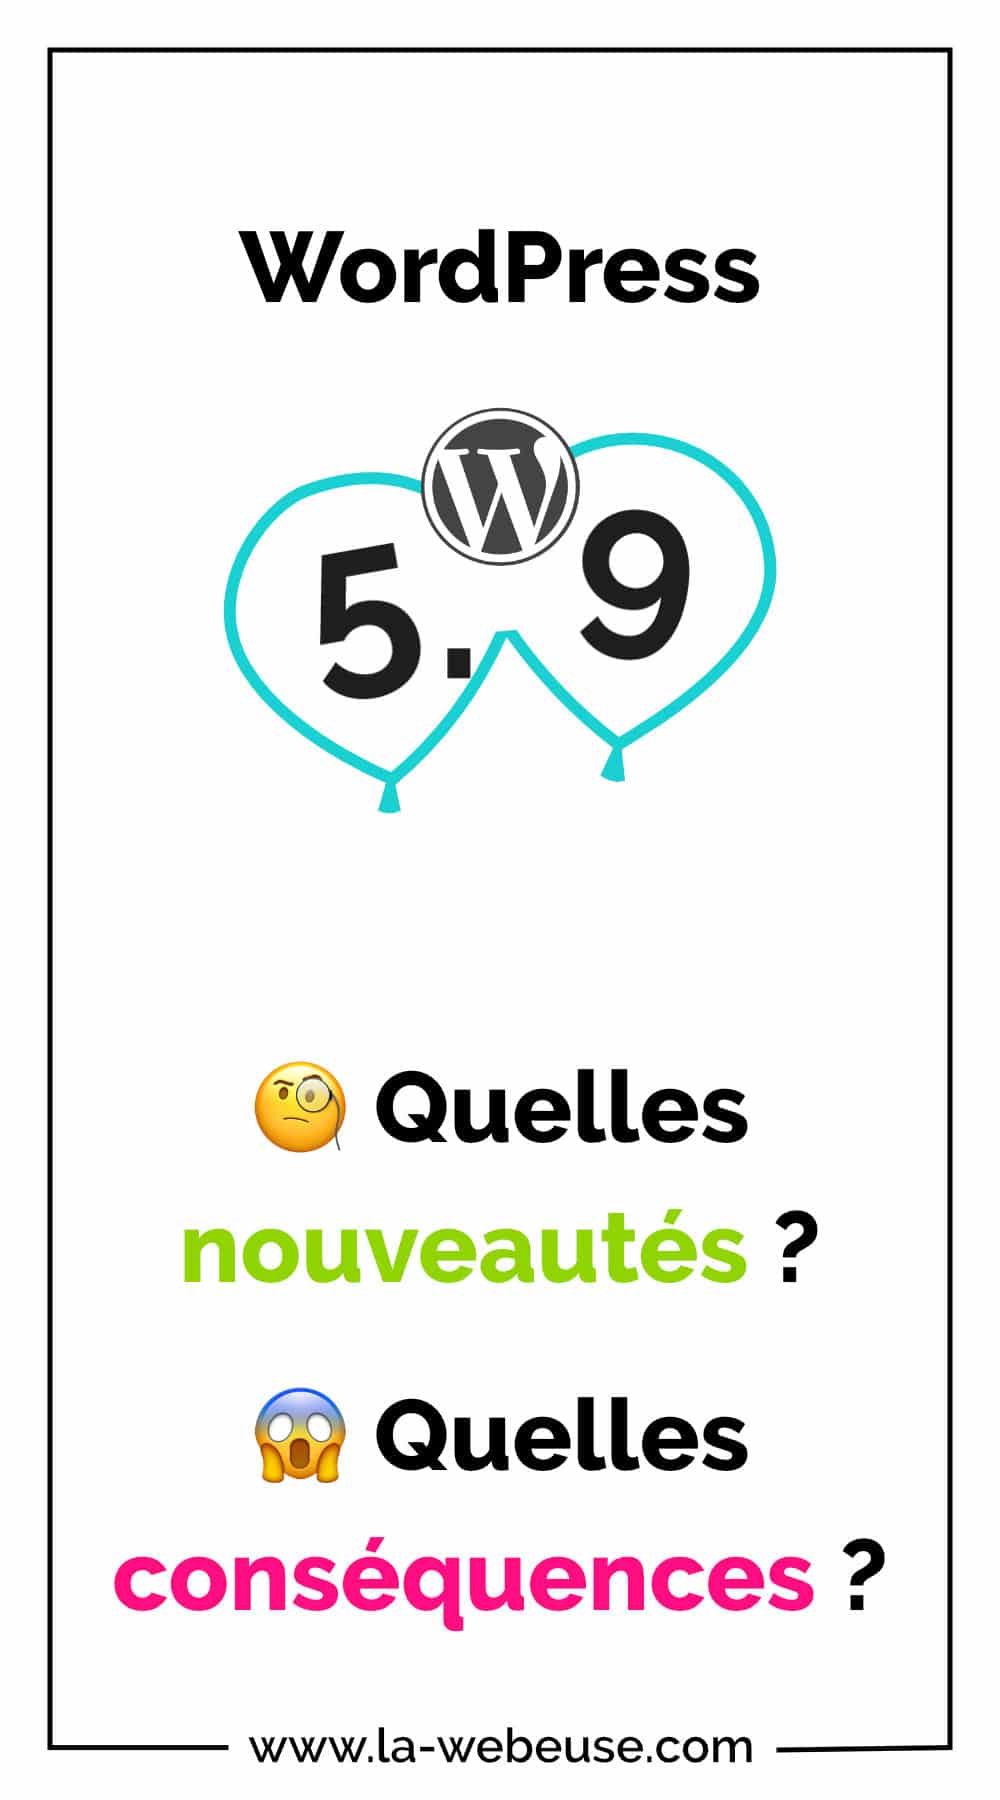 WordPress 5.9 nouveautés